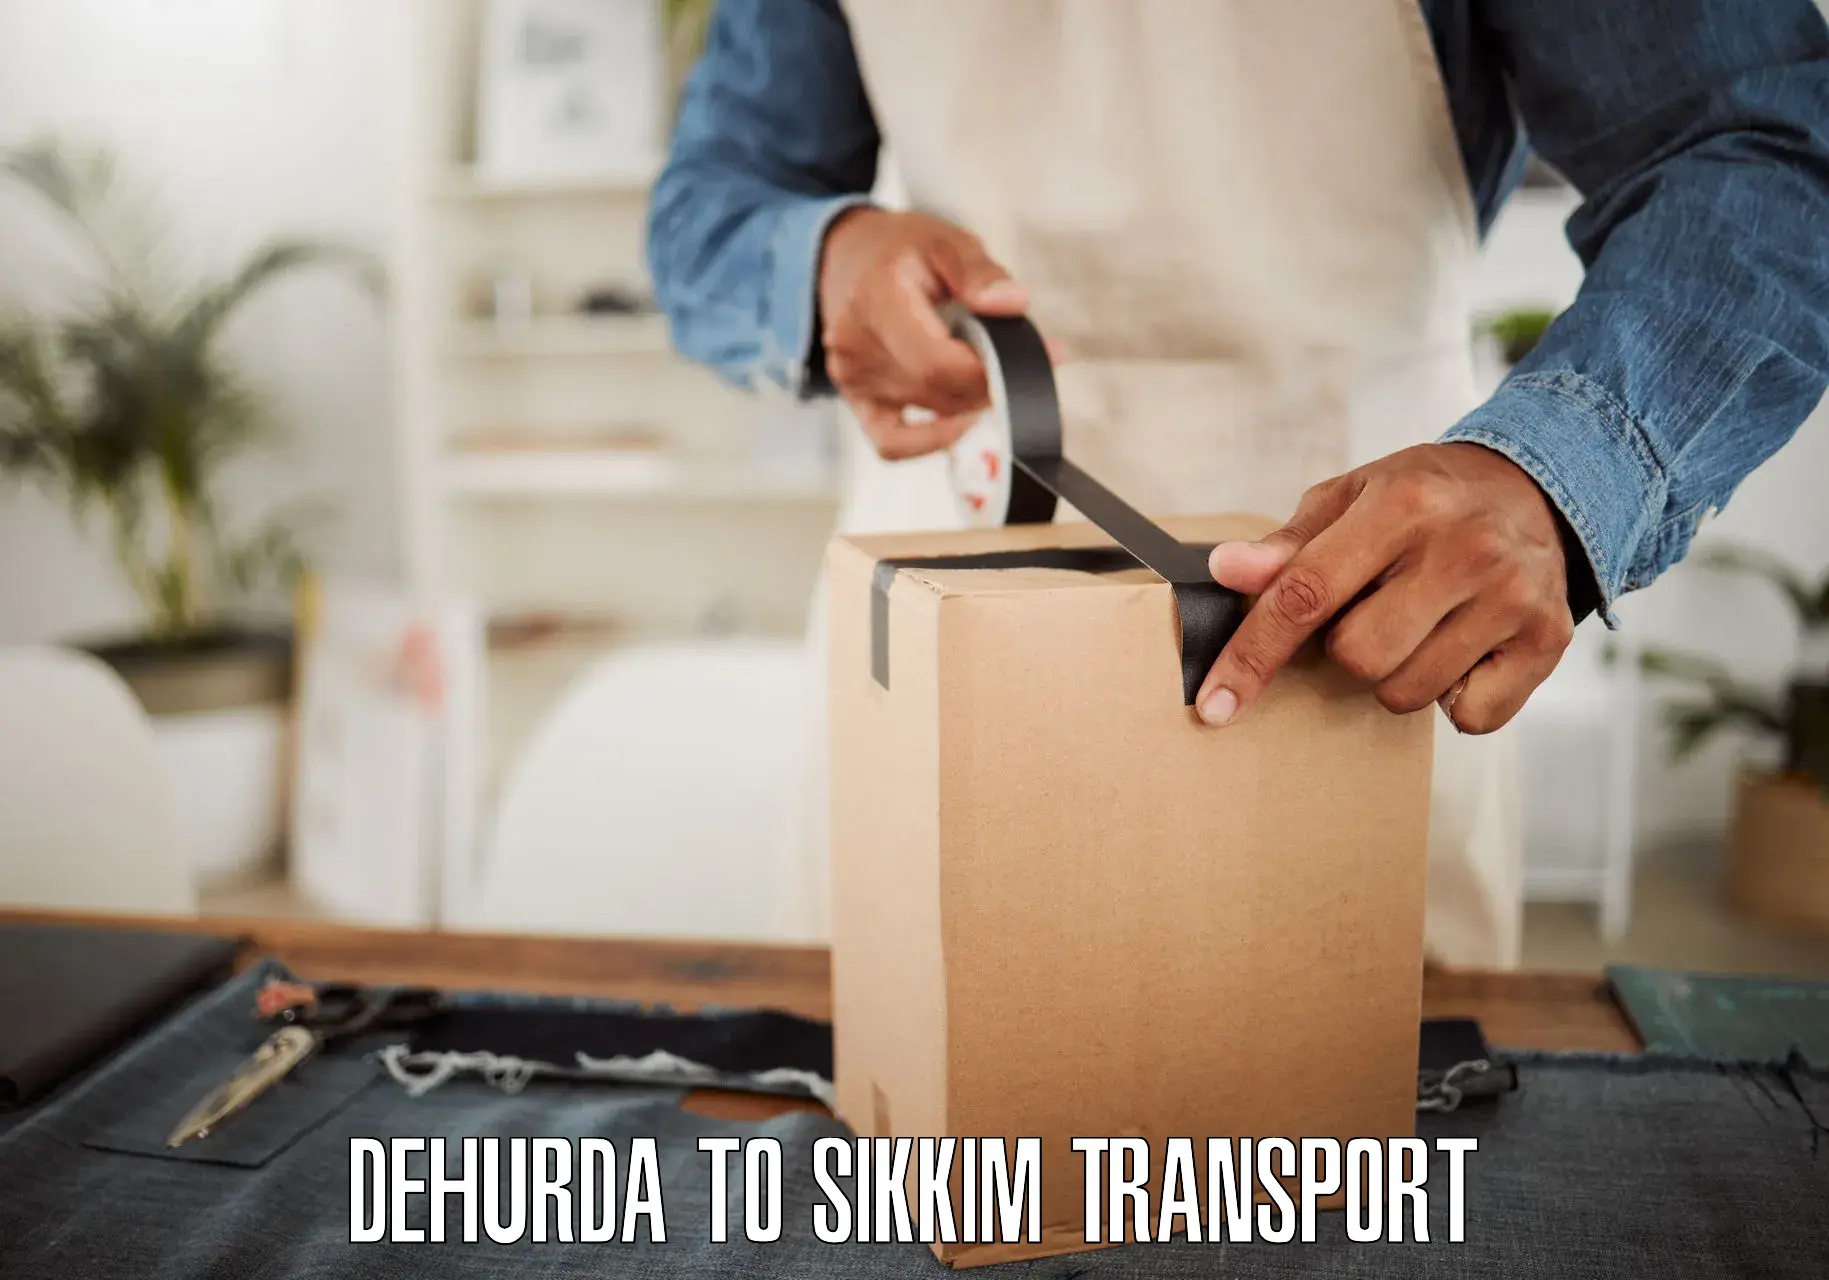 Transport in sharing Dehurda to Jorethang